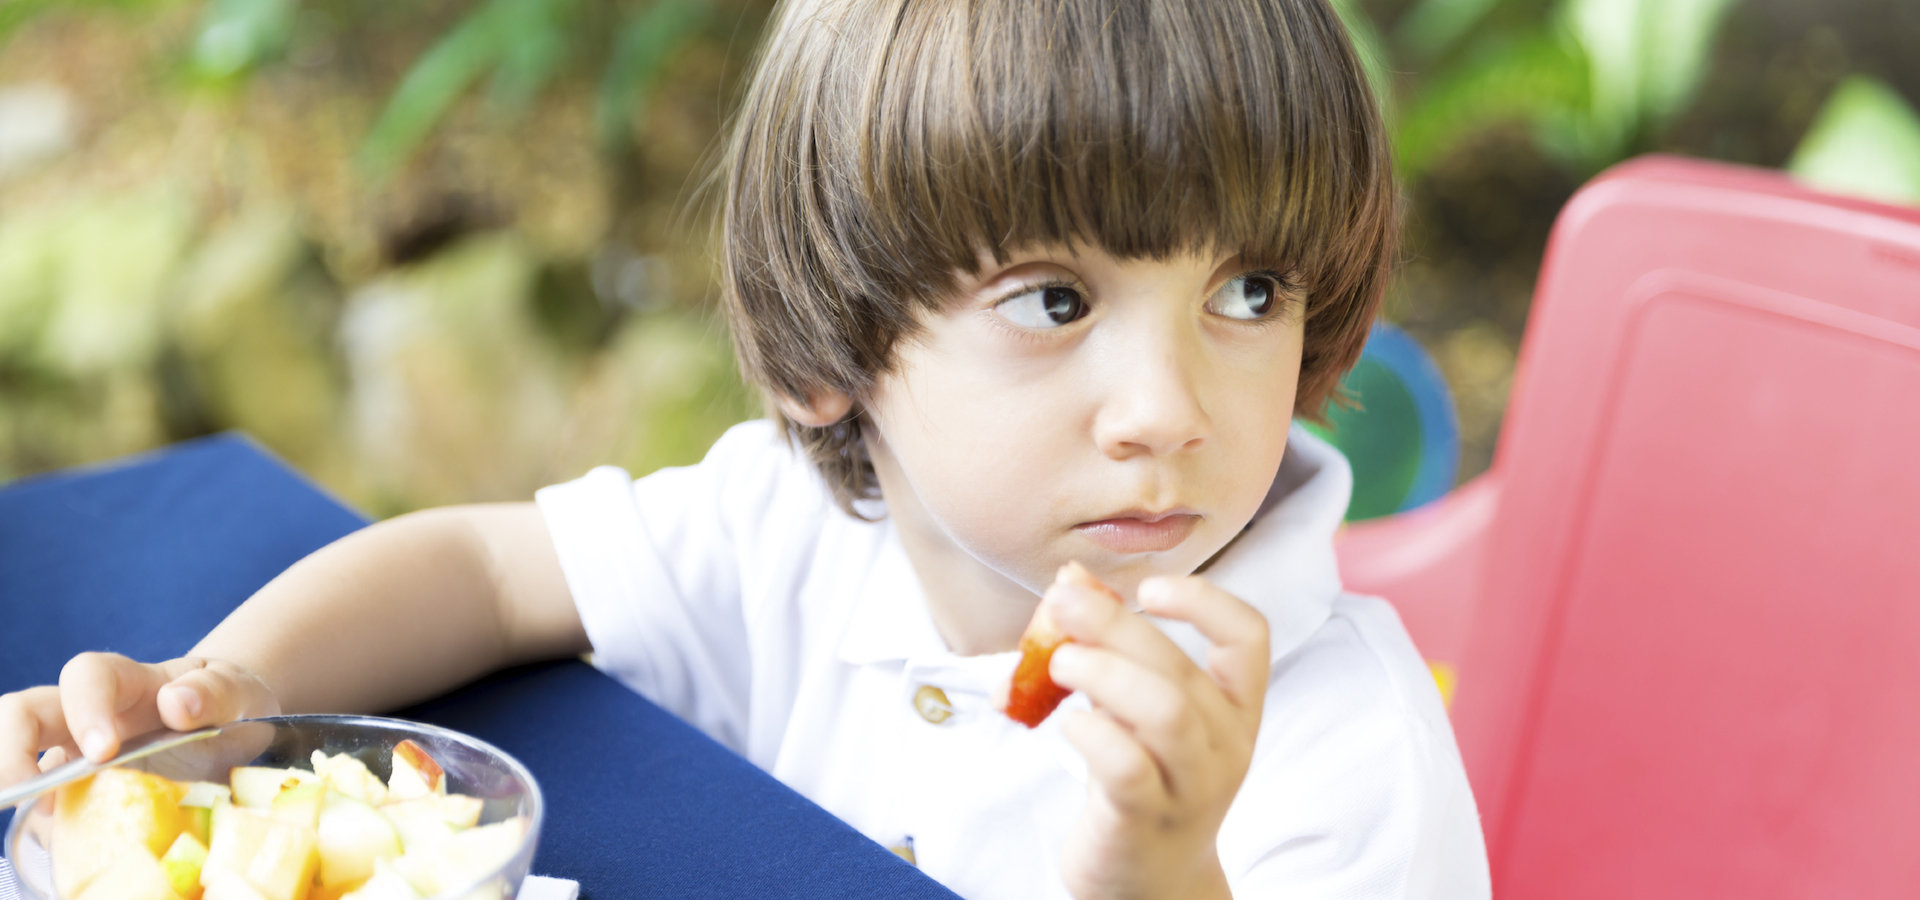 Mäkeliger Esser: Kind beim Essen